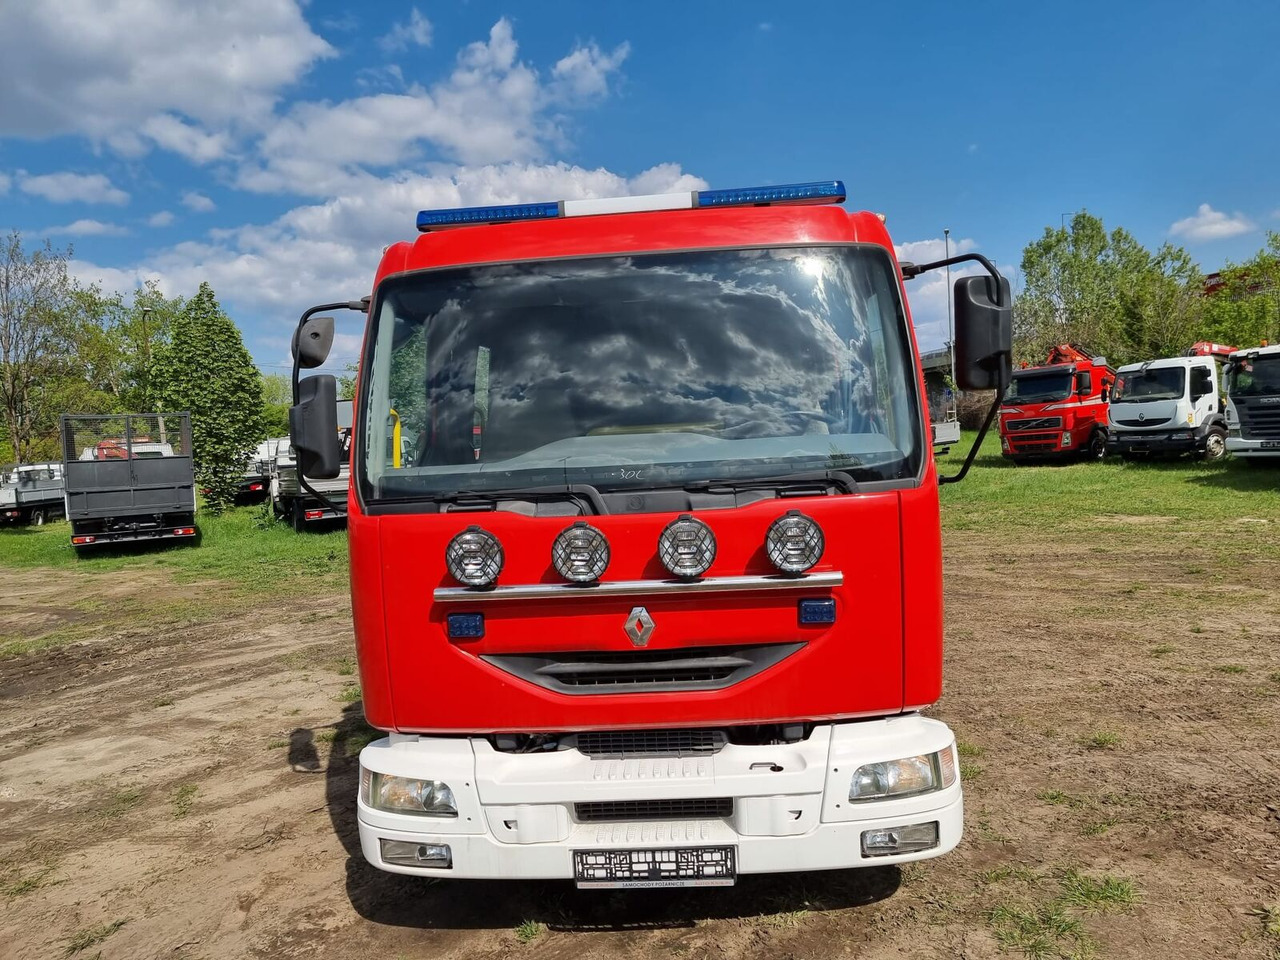 Пожарная машина Renault Midlum 210 dci Fire Truck - 2000l water + 170l foam: фото 17